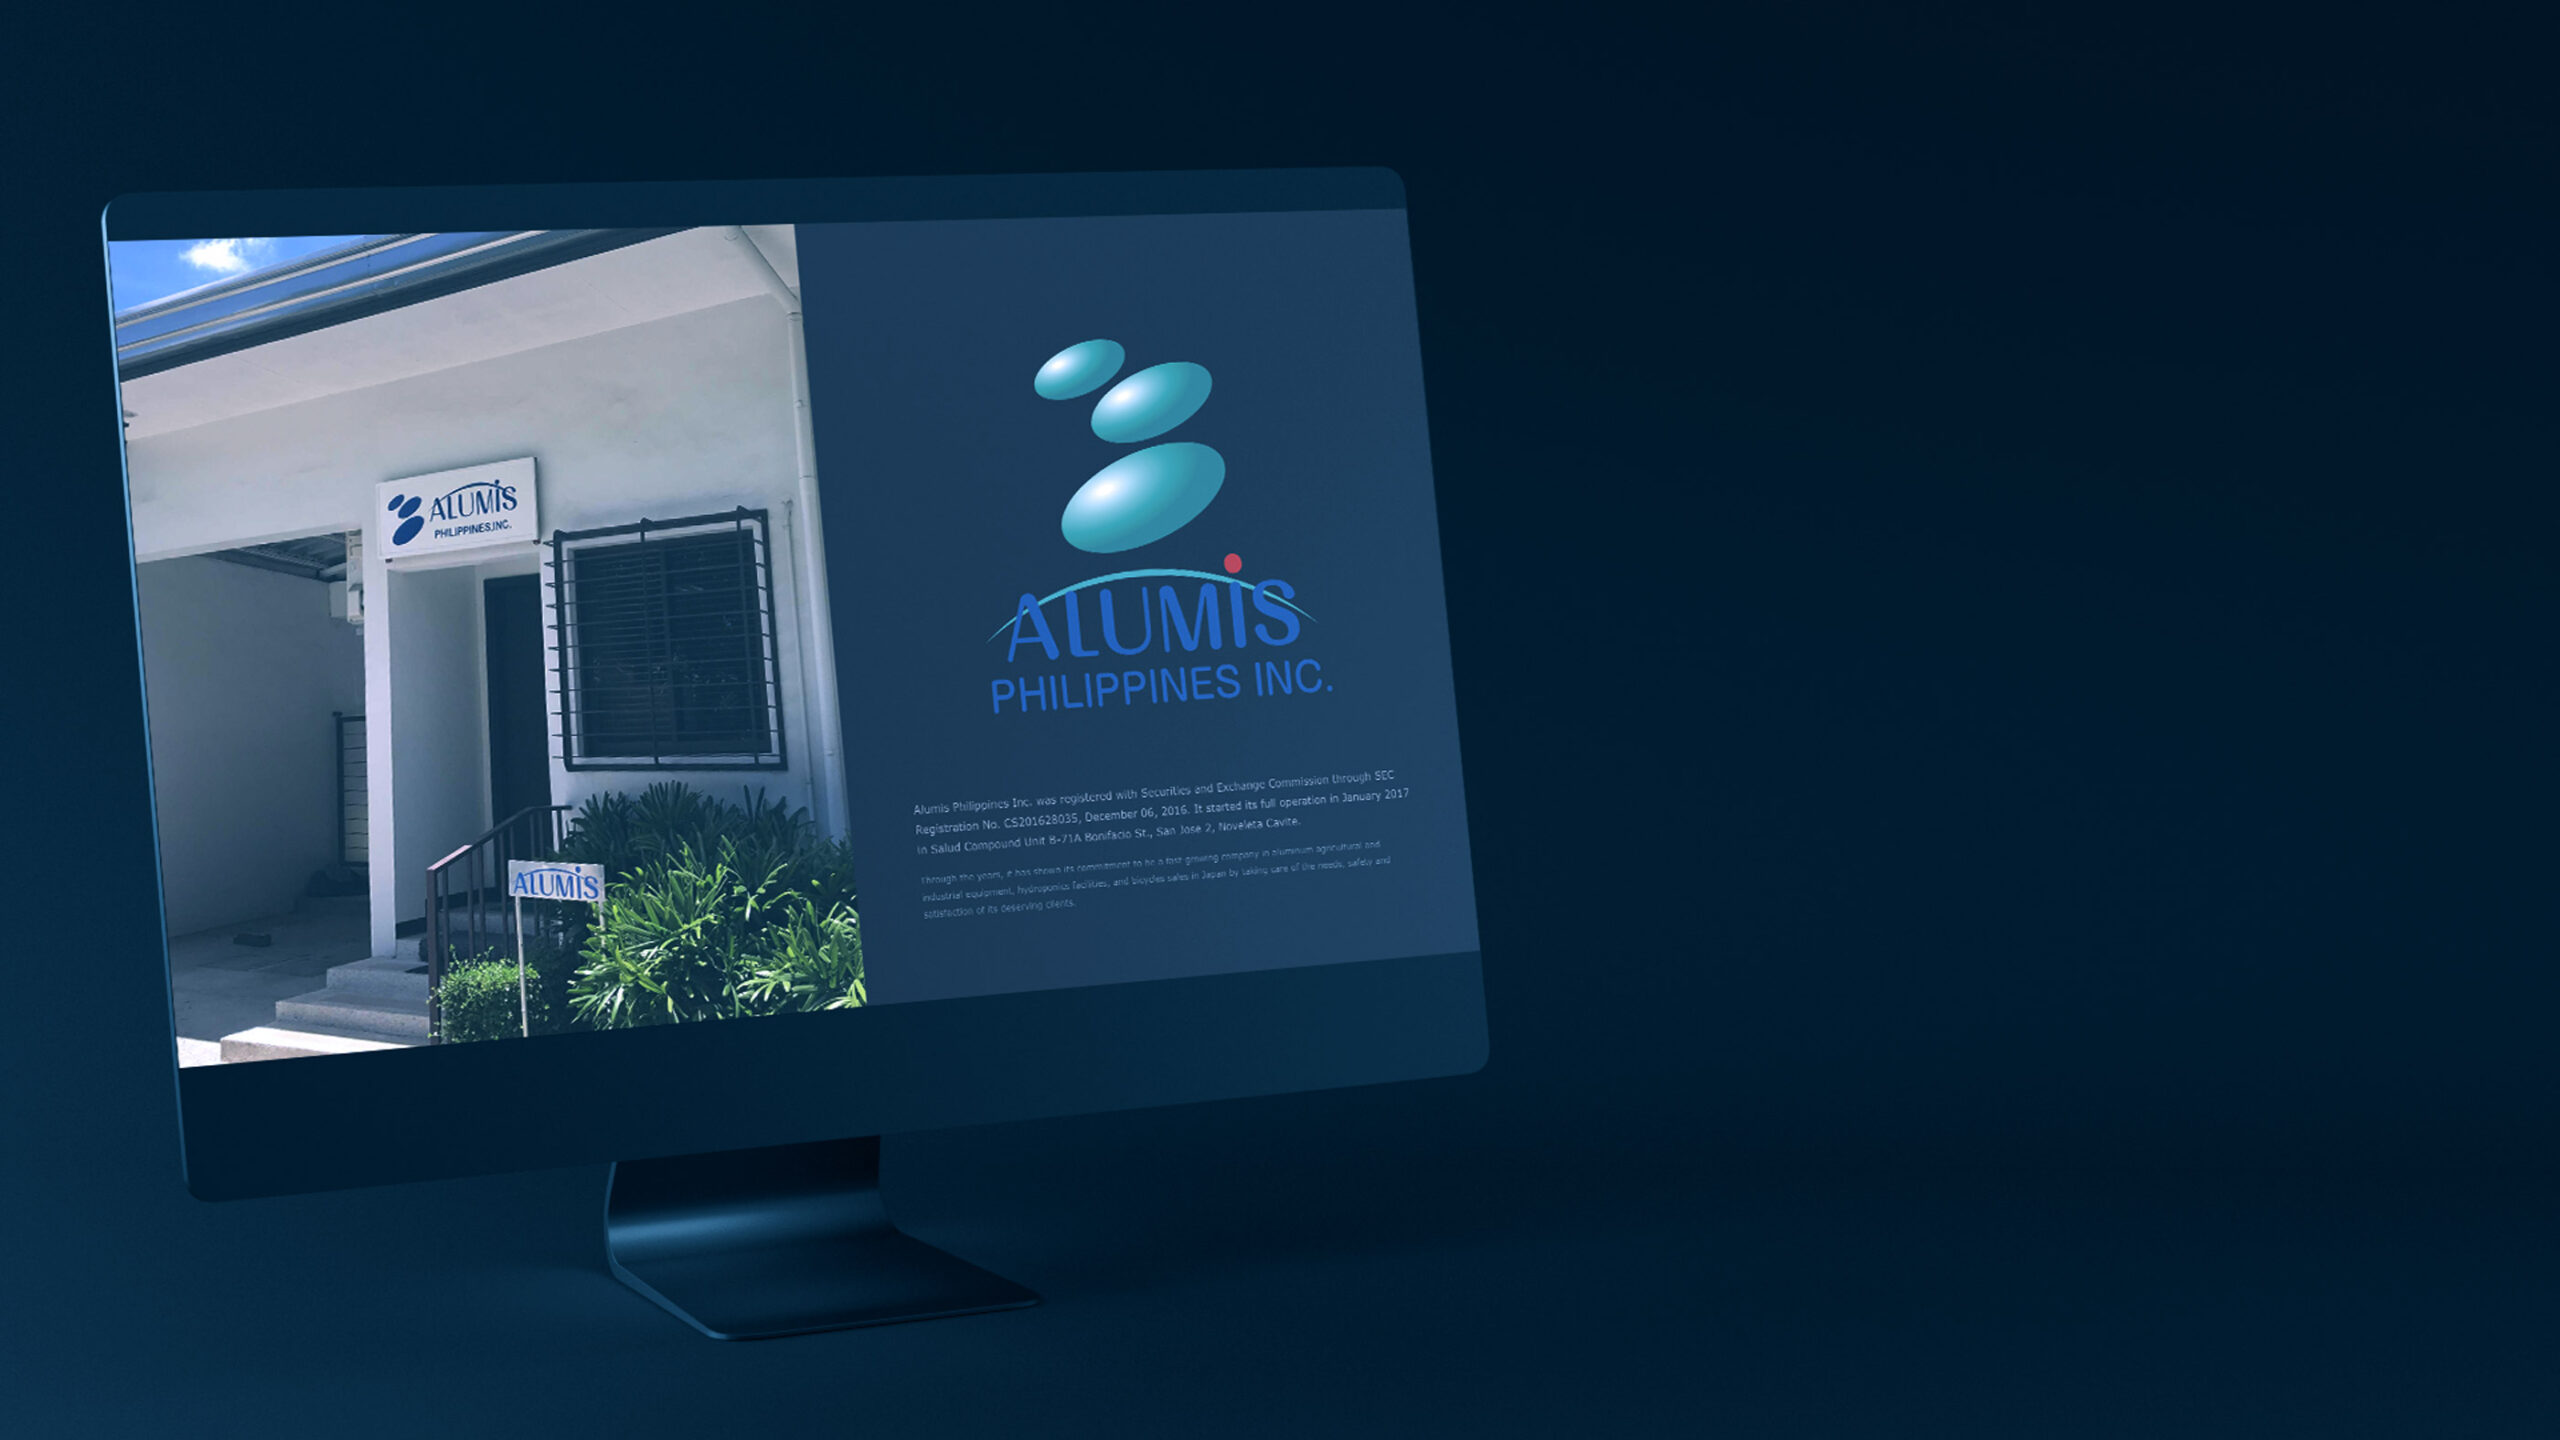 株式会社アルミスフィリピン支社のトップページウェブデザインがデスクトップパソコンに表示されているスティルライフグラフィック写真